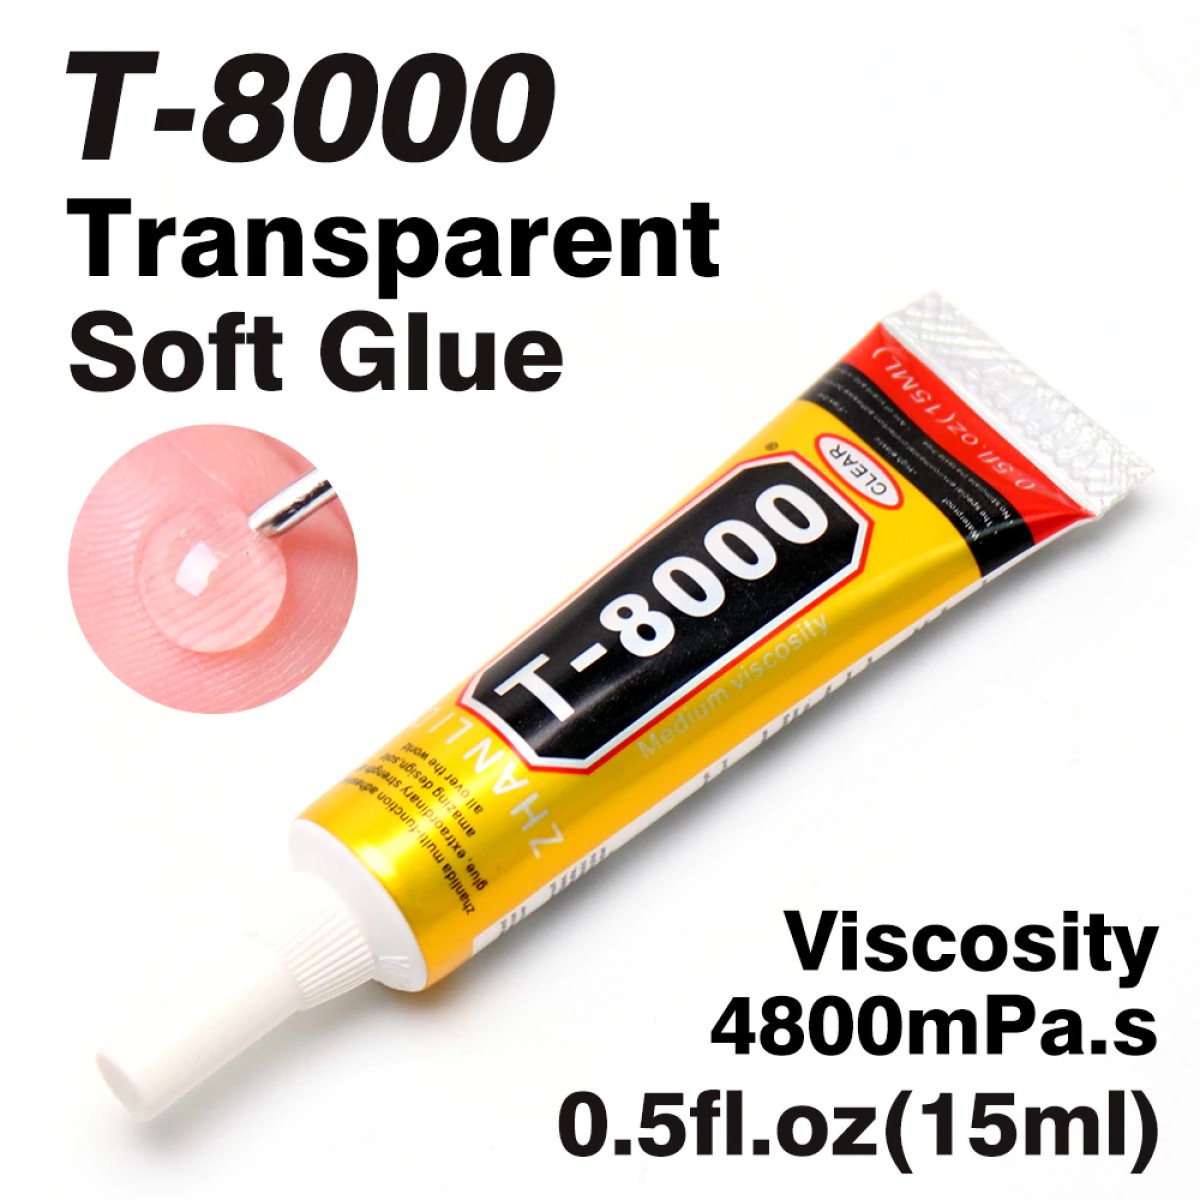 กาว กาวติดจอมือถือ กาวอเนกประสงค์ T7000 / T8000 / B7000 กาวติดจอ กาวติดมือถือ T-7000 (เนื้อกาวดำ) / T-8000 (เนื้อกาวใส) / B-7000 (เนื้อกาวใส) 15ml